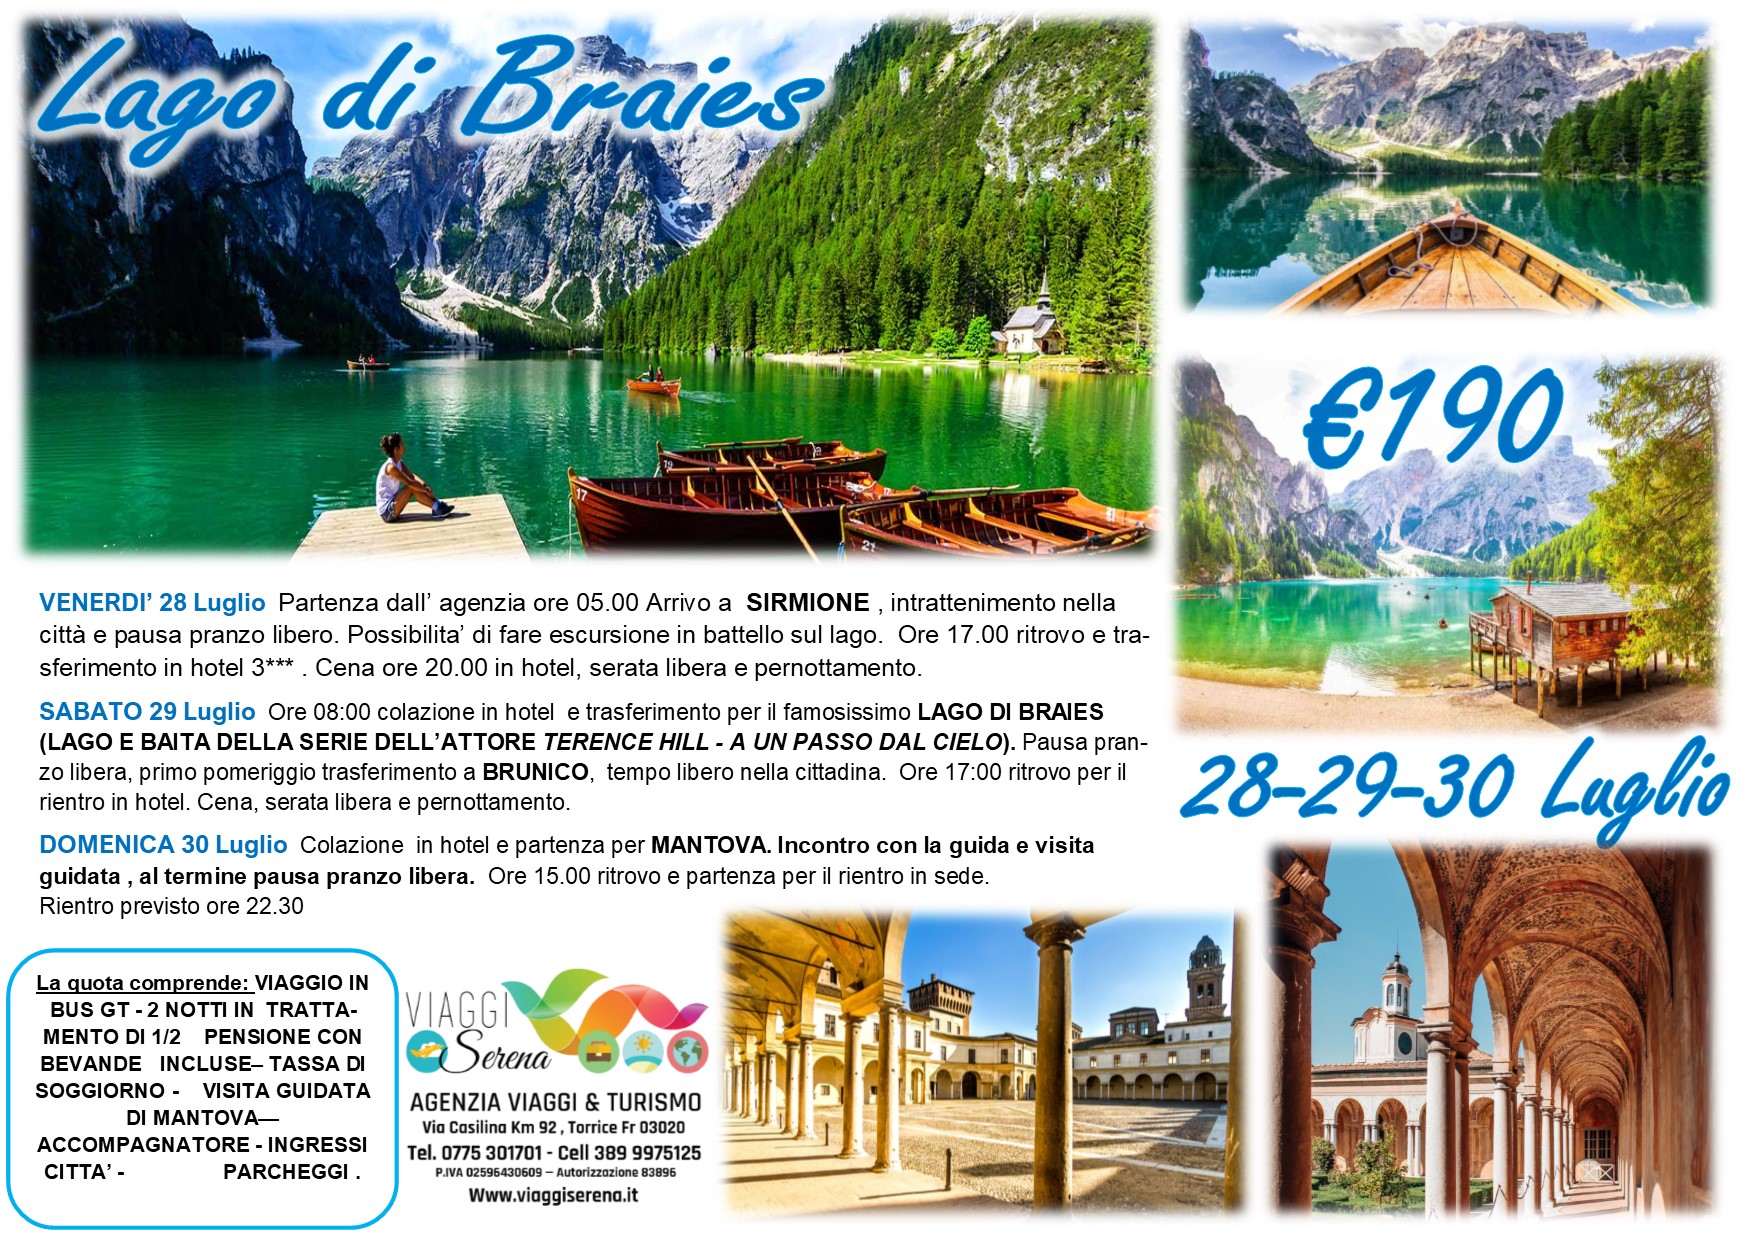 Viaggi di Gruppo: Lago di Braies, Sirmione, Brunico & Mantova 28-29-30 Luglio €190,00